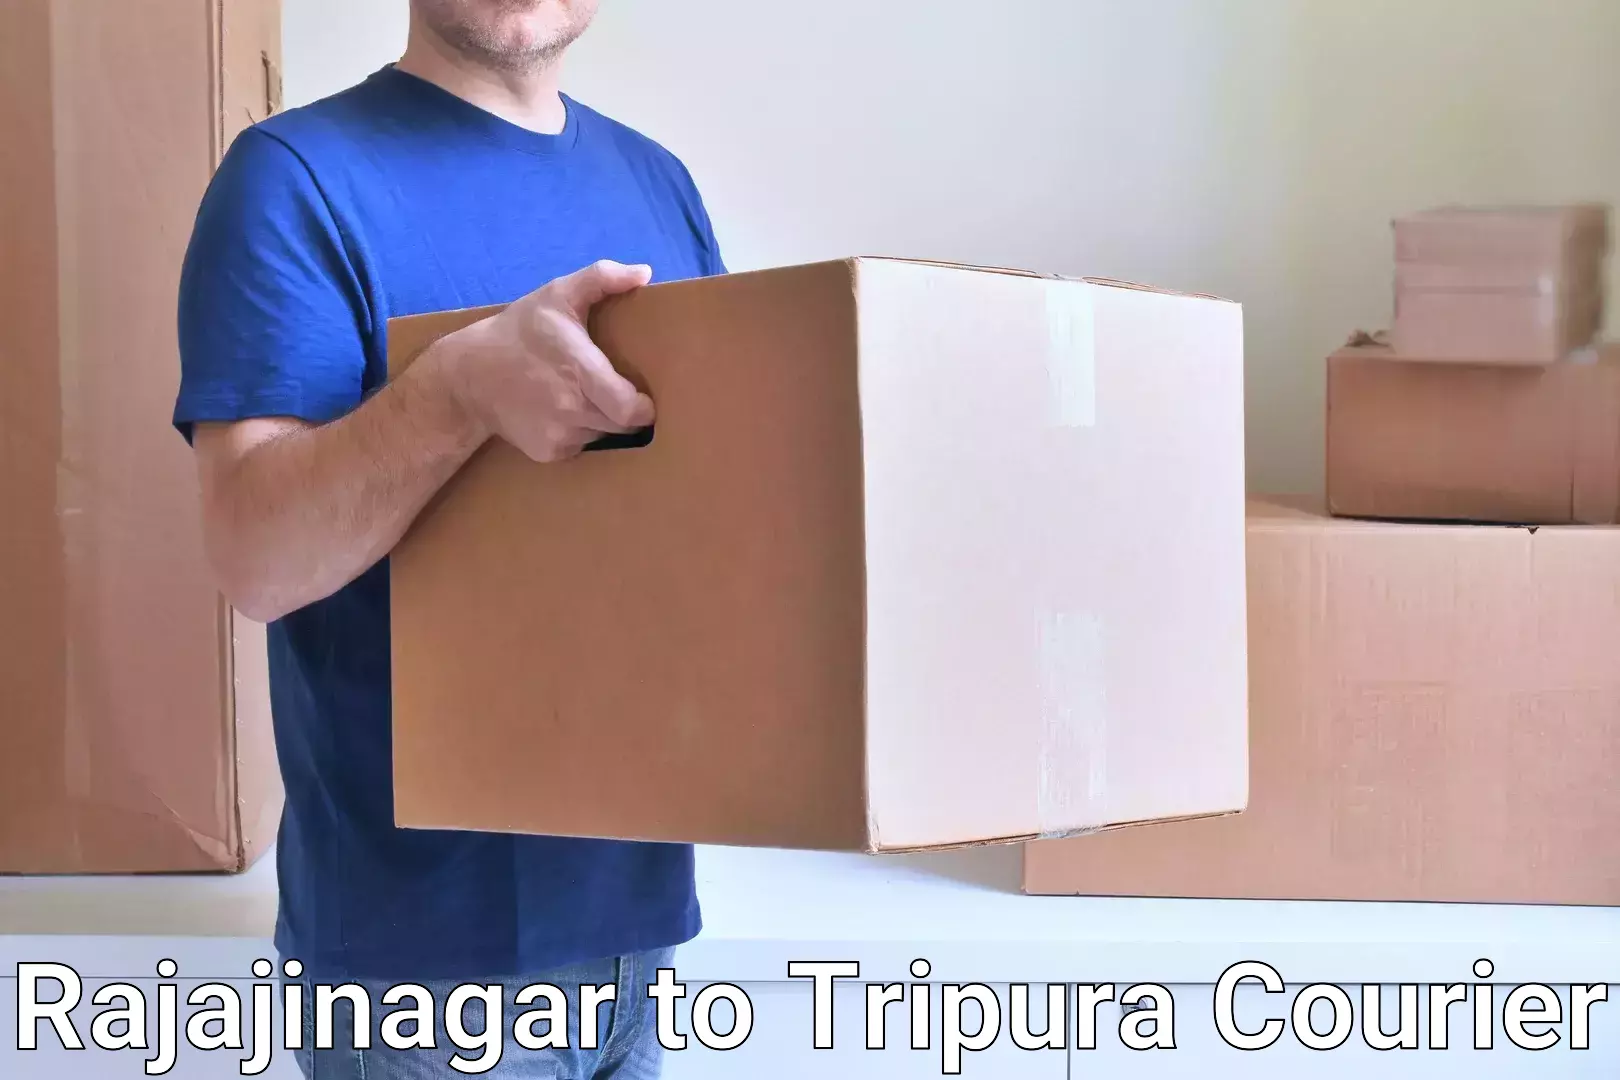 Quality courier services Rajajinagar to Tripura